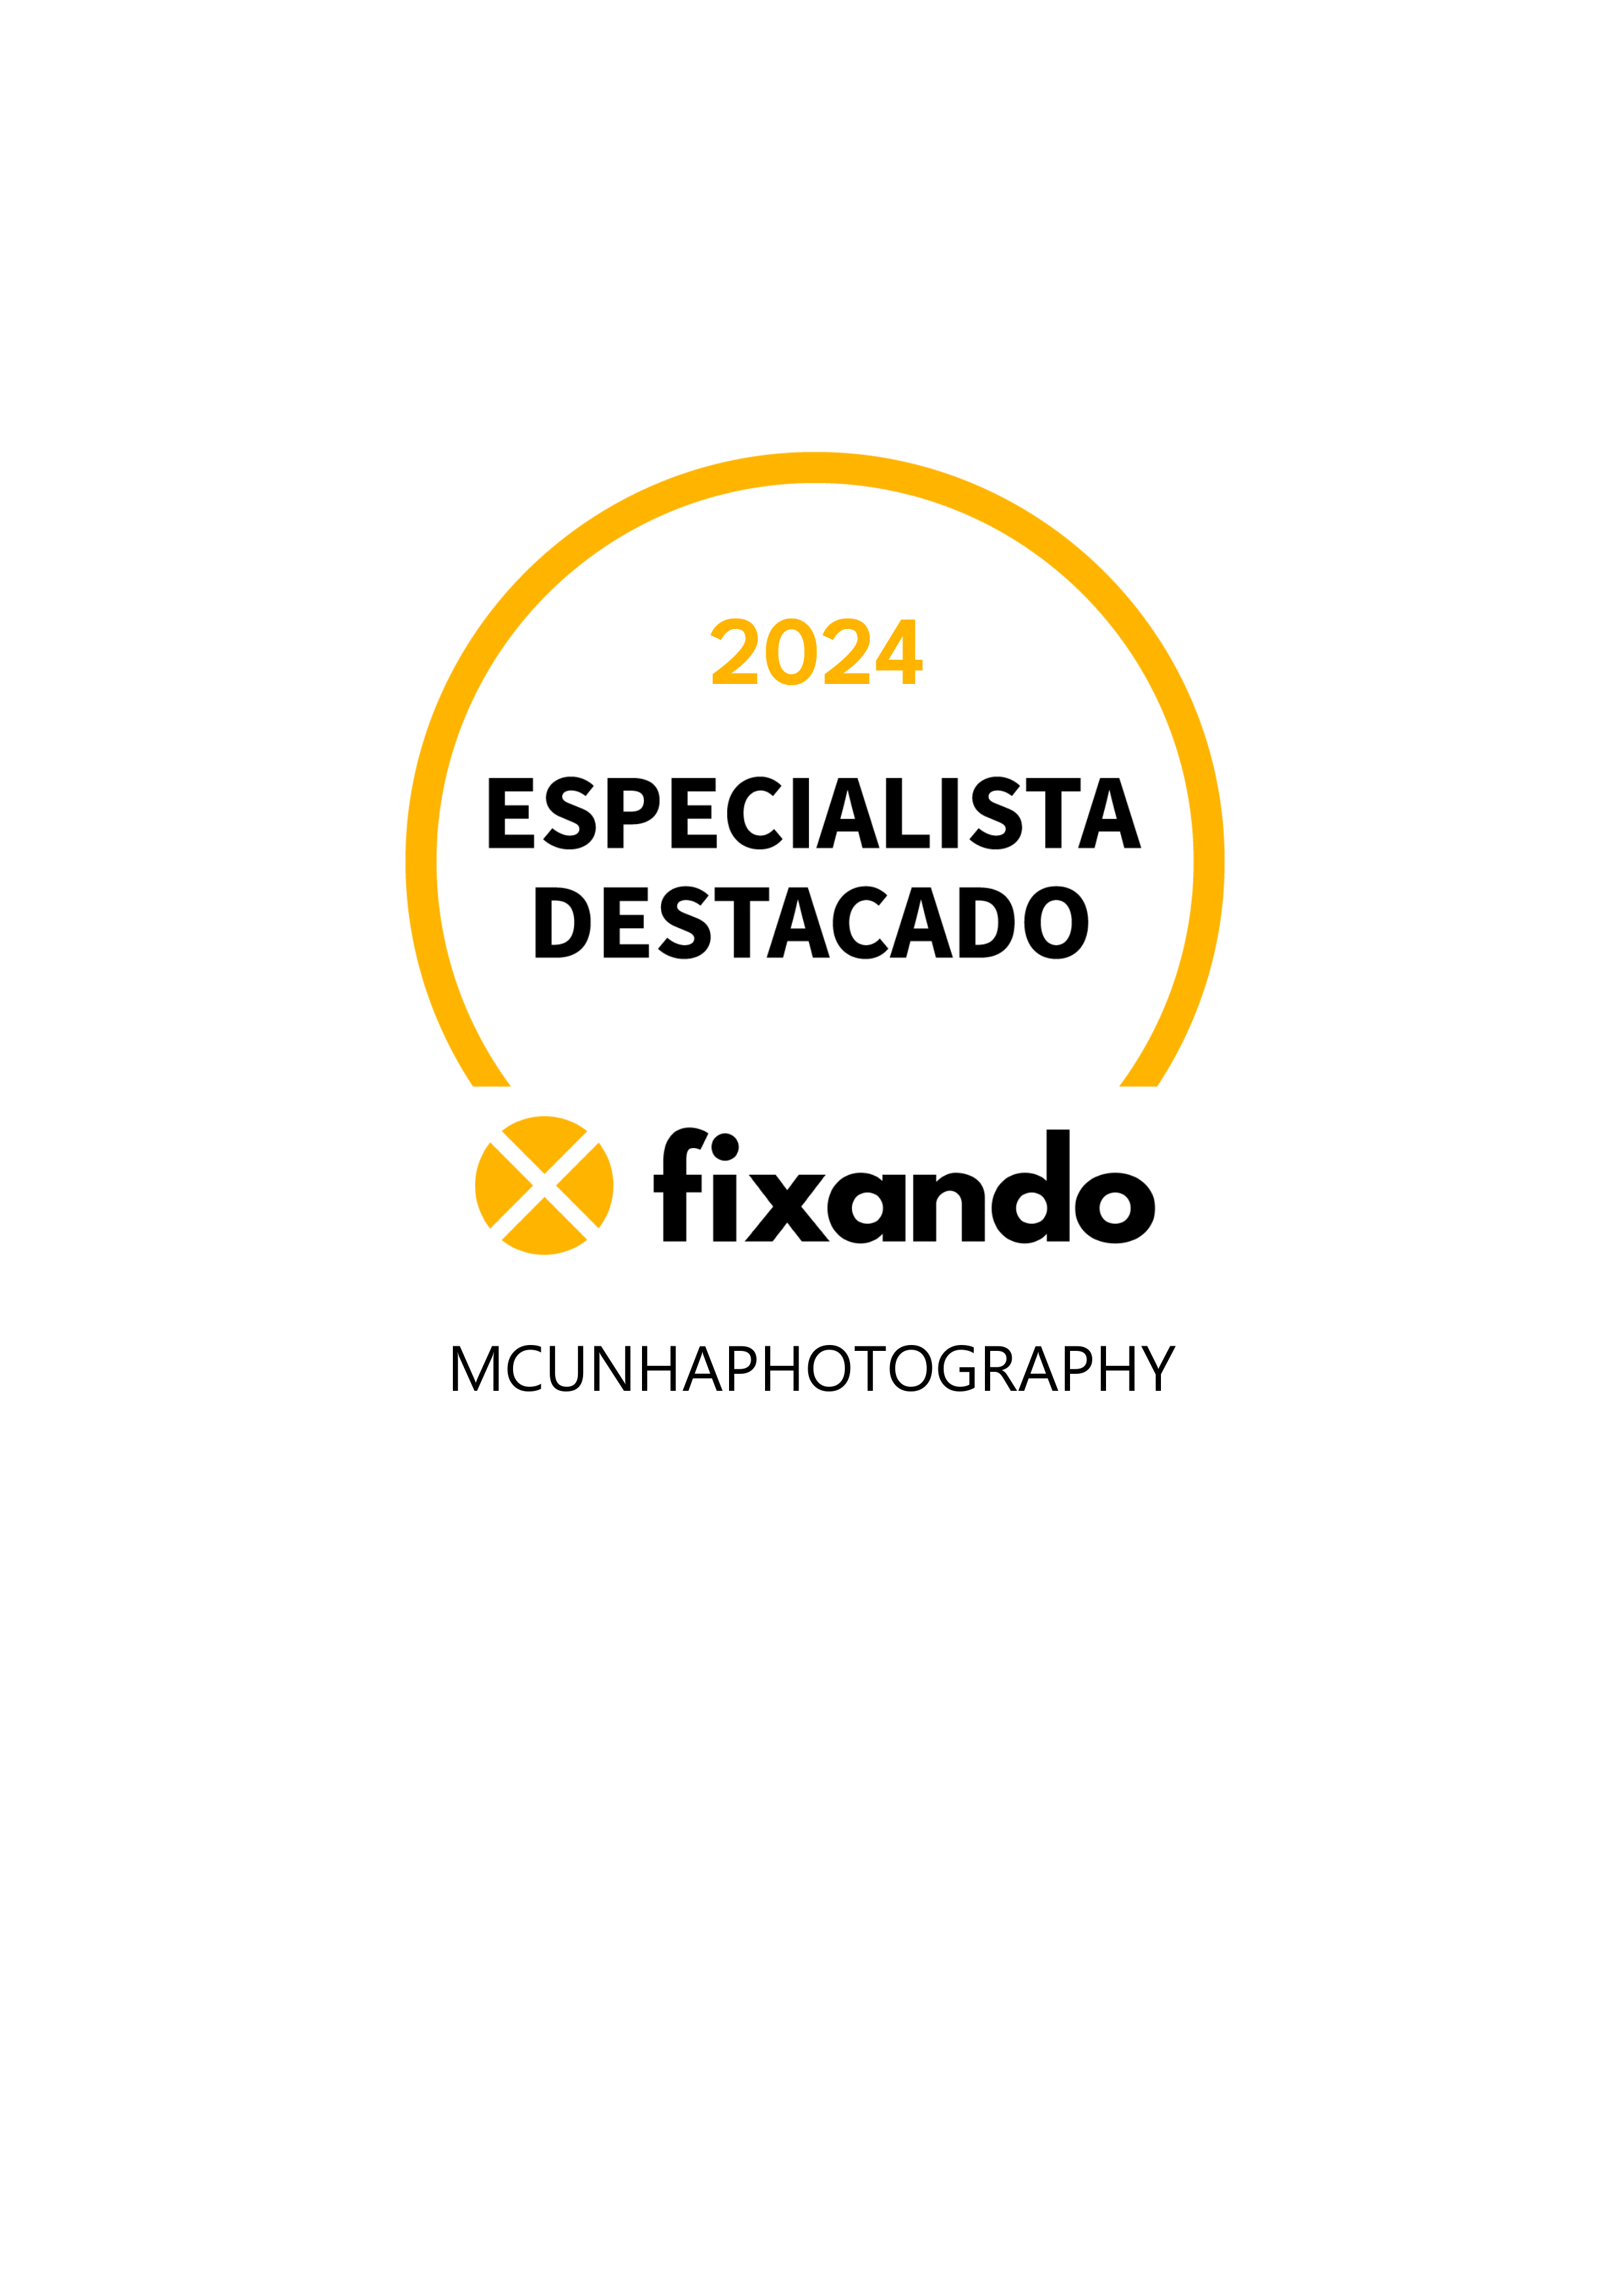 MCunhaPhotography - Anadia - Design de Logotipos